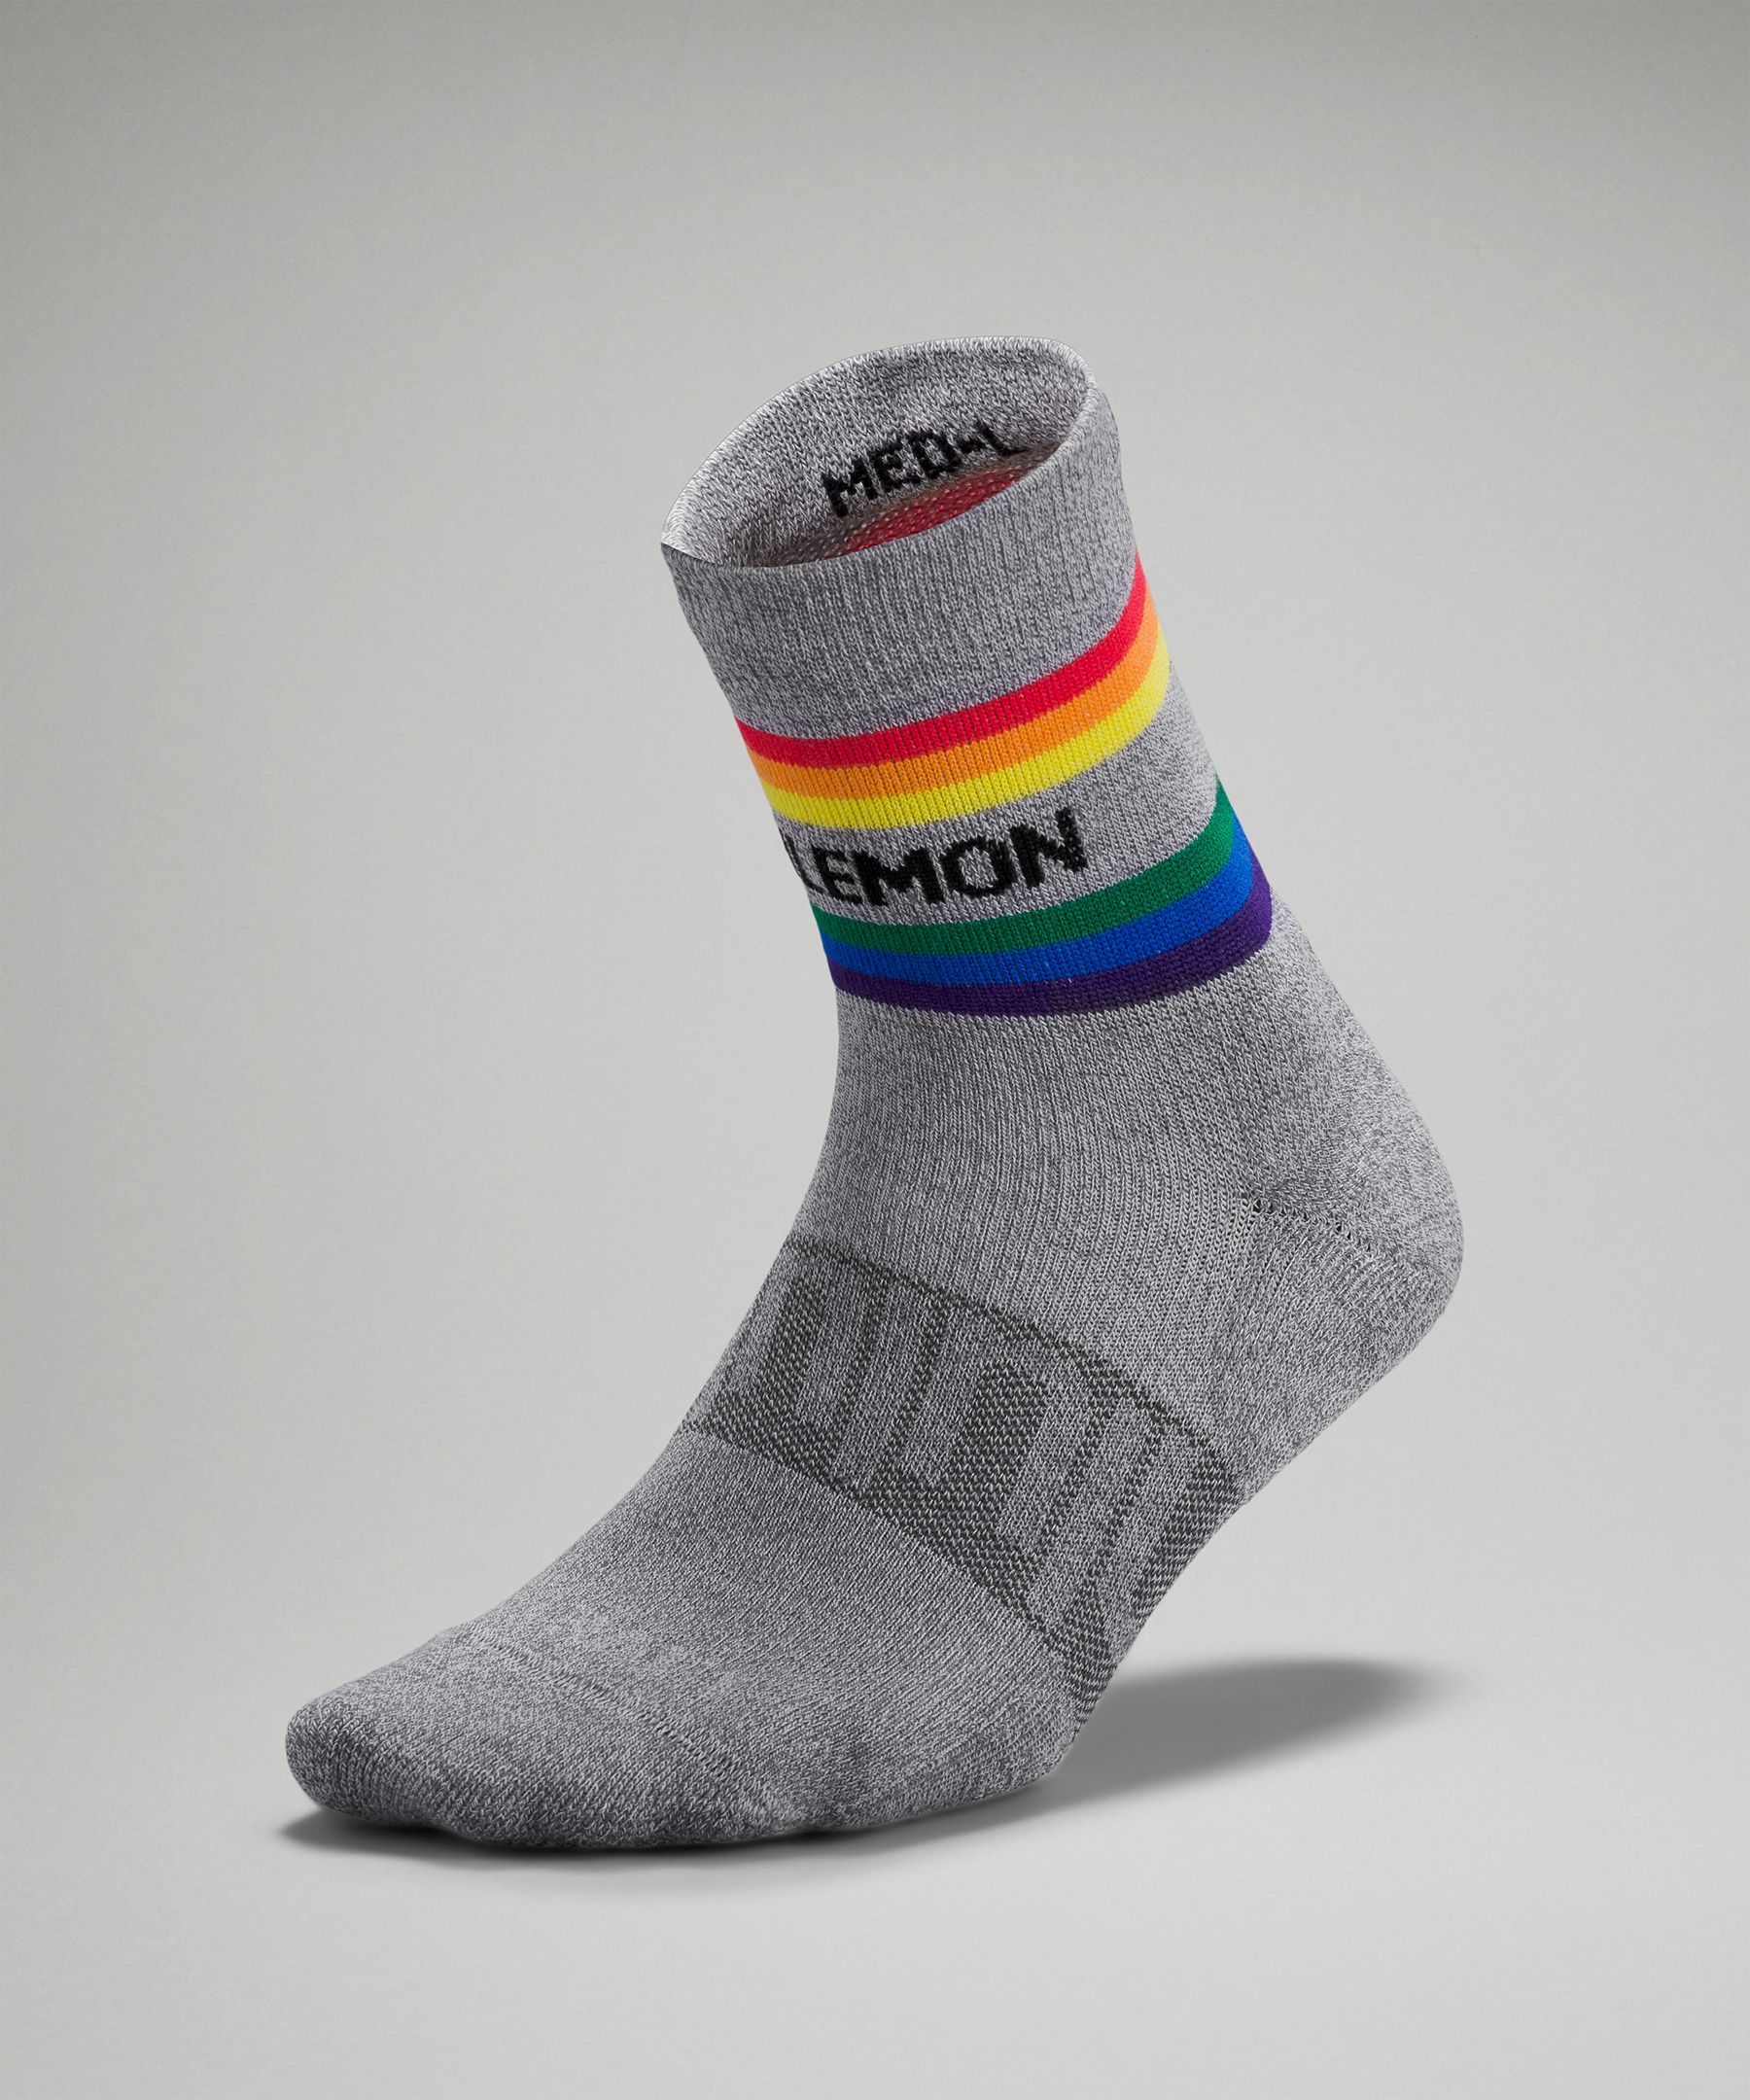 Lululemon Daily Stride Mid-crew Socks Rainbow